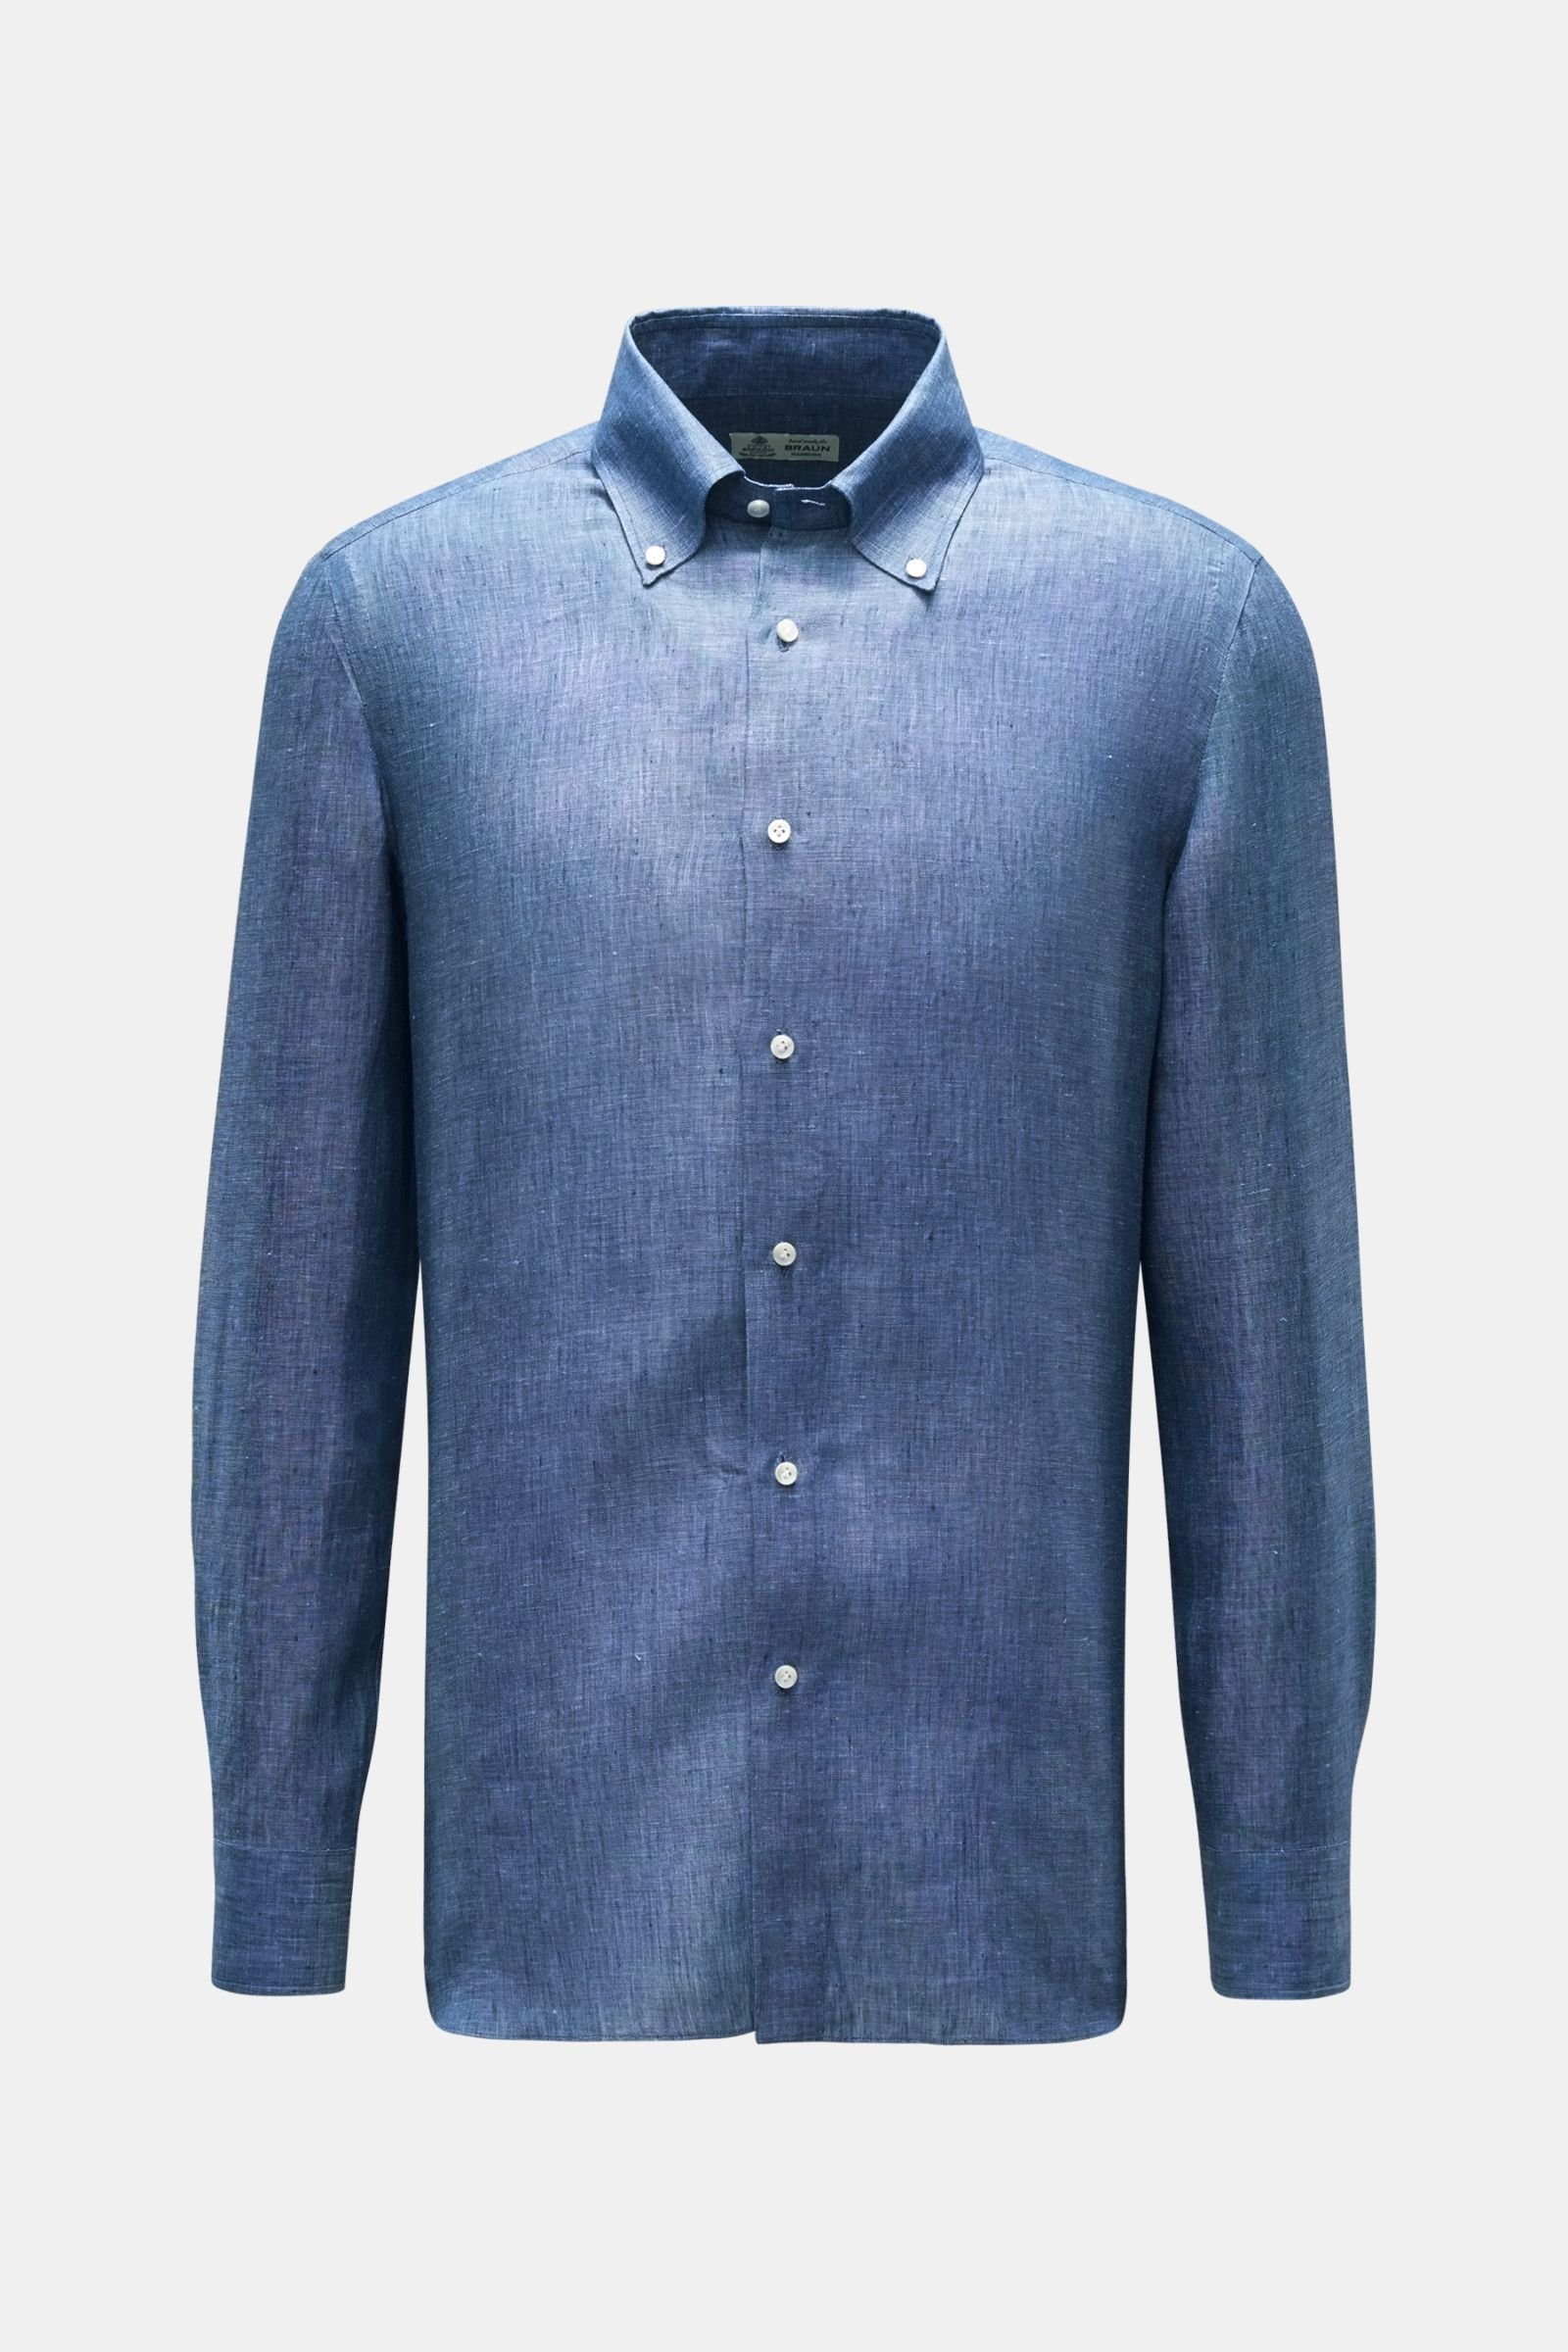 Linen shirt 'Gable' button-down collar grey-blue